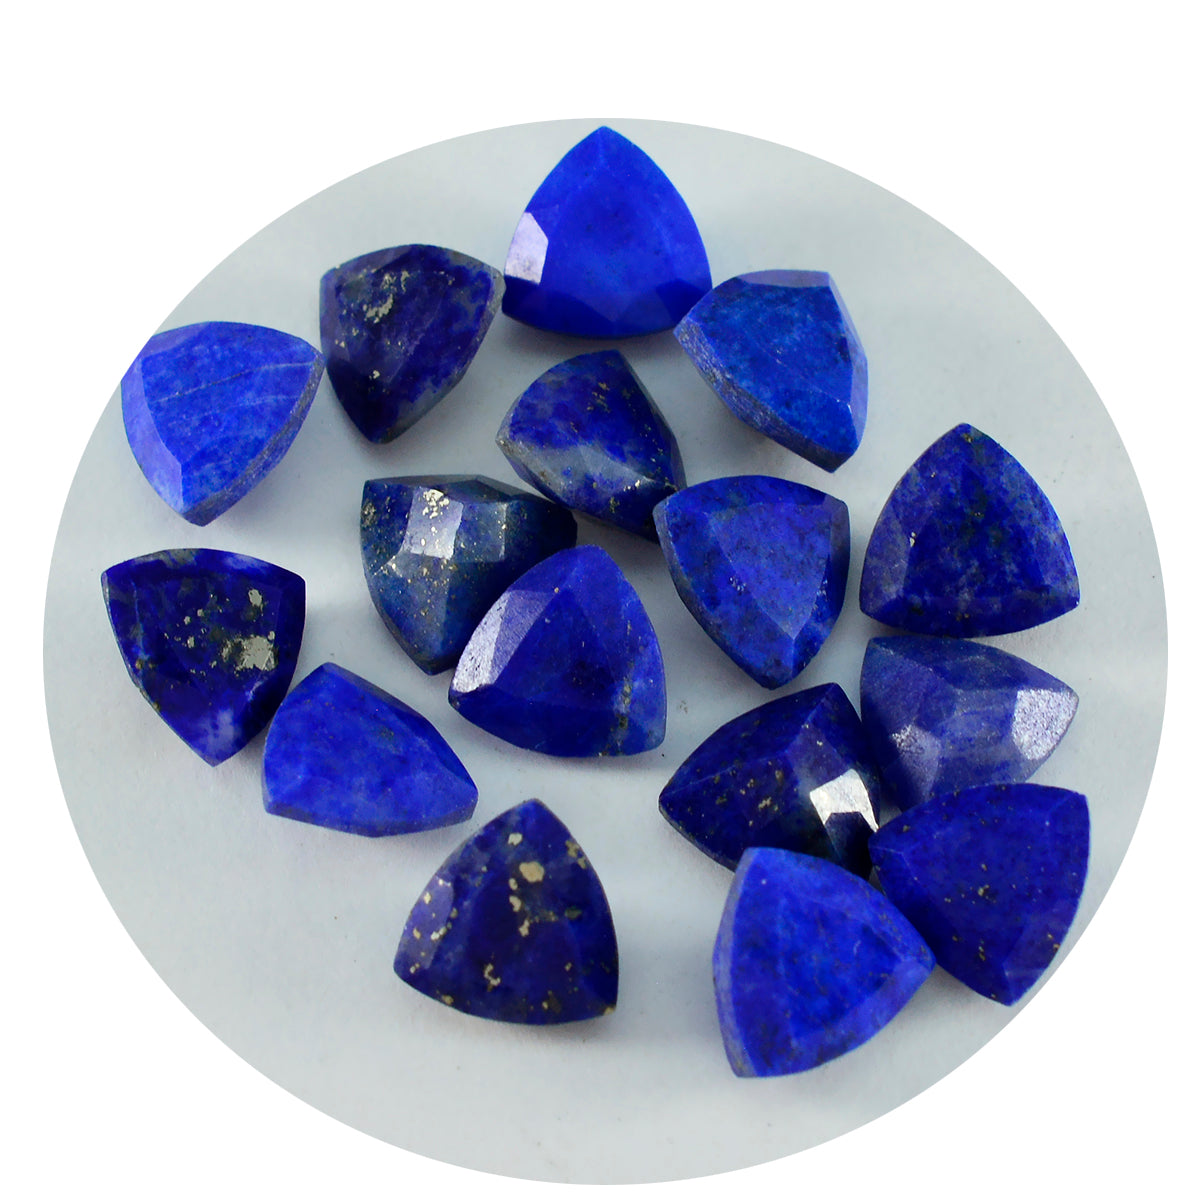 Riyogems 1 pièce de lapis-lazuli bleu véritable à facettes 6x6mm en forme de trillion, gemme en vrac de qualité impressionnante